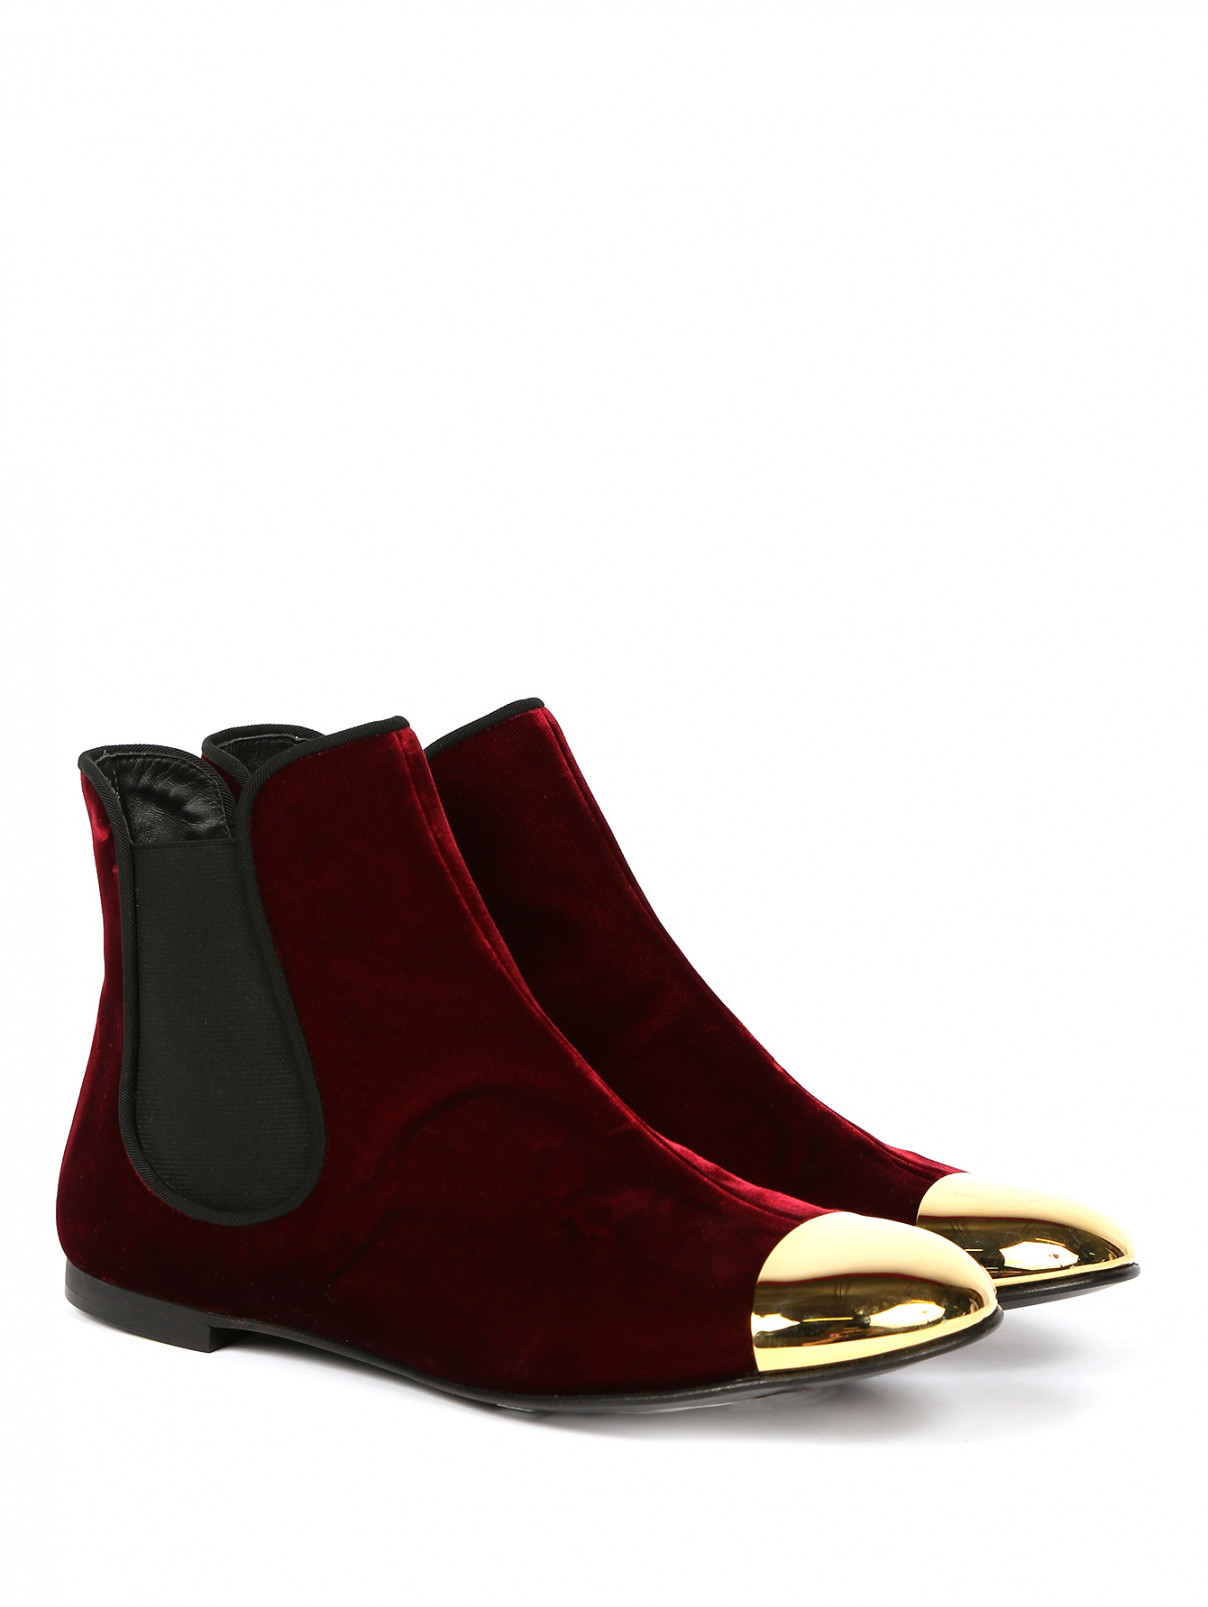 Ботинки из бархата с контрастным носом Giuseppe Zanotti  –  Общий вид  – Цвет:  Красный